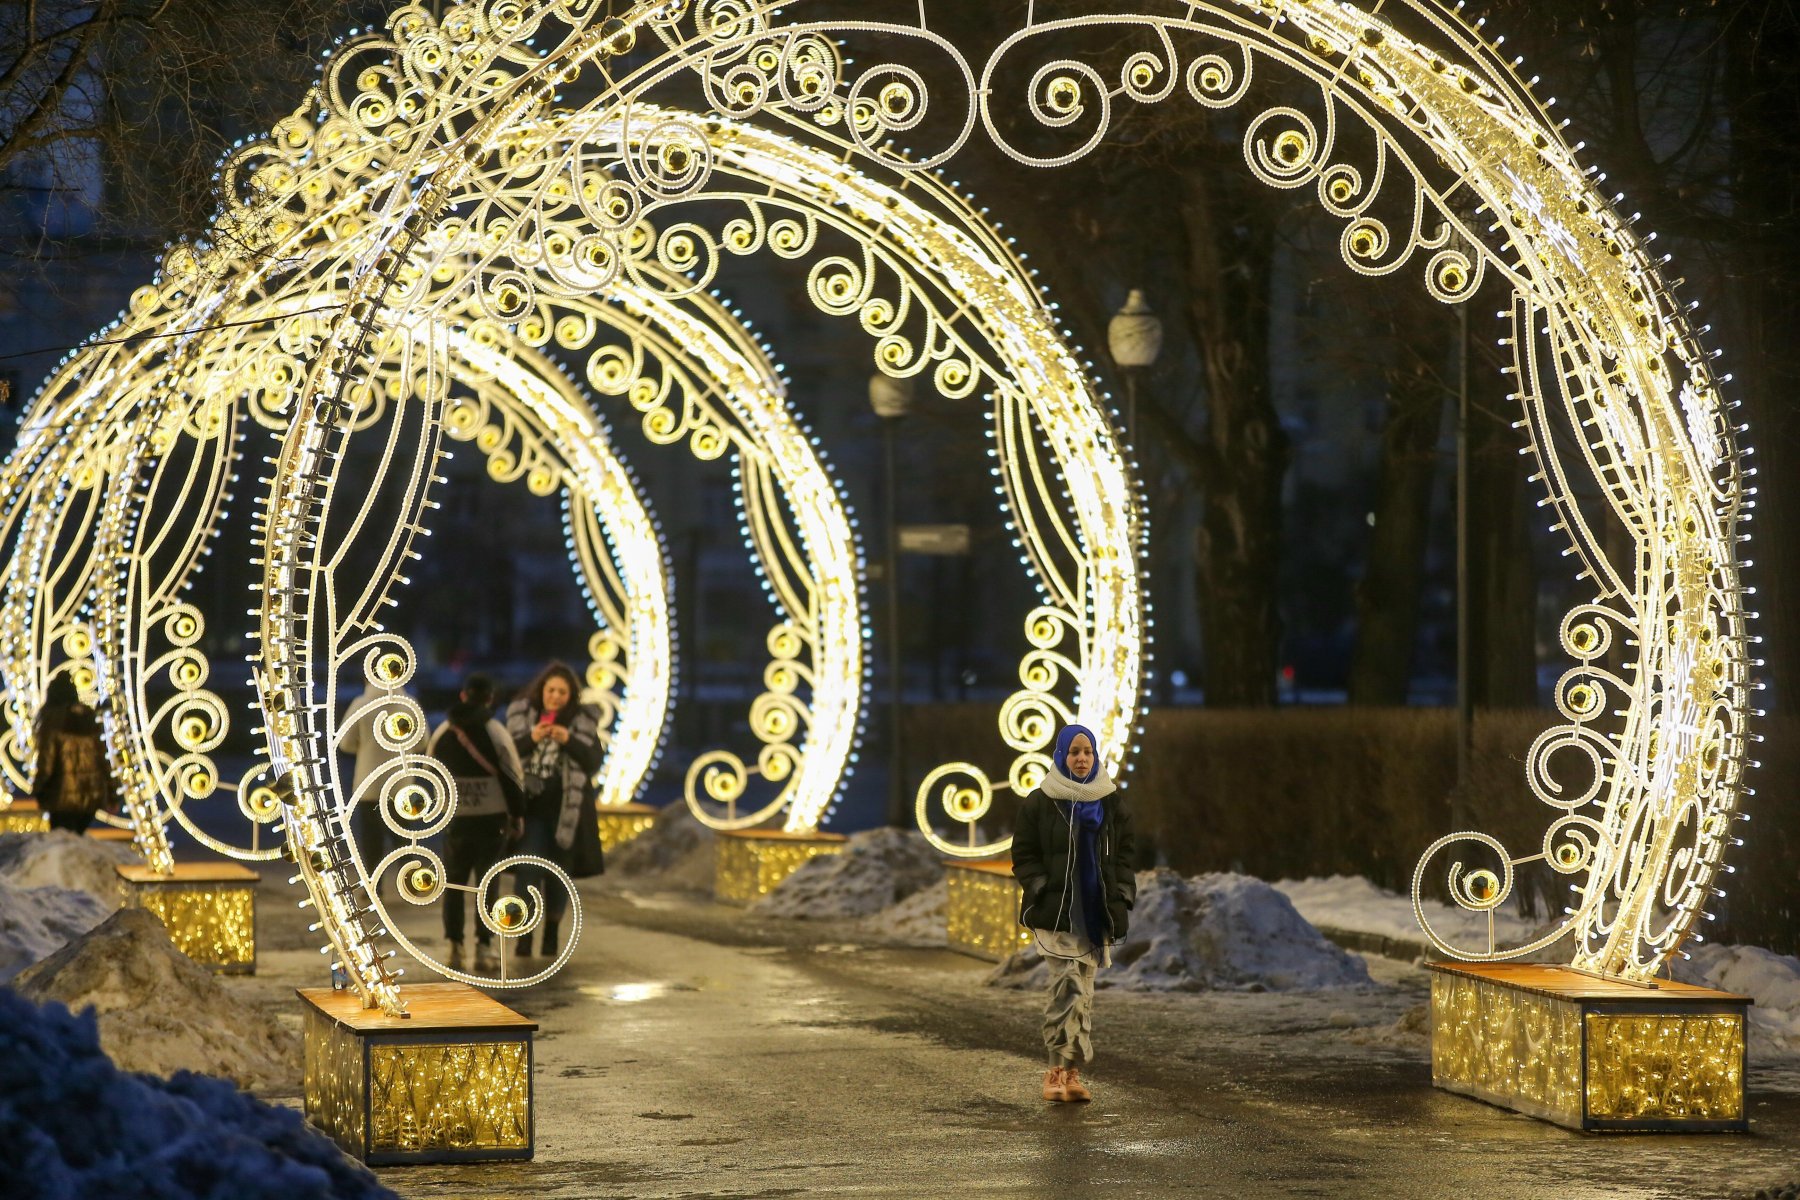 Москвичей ждет теплая новогодняя ночь